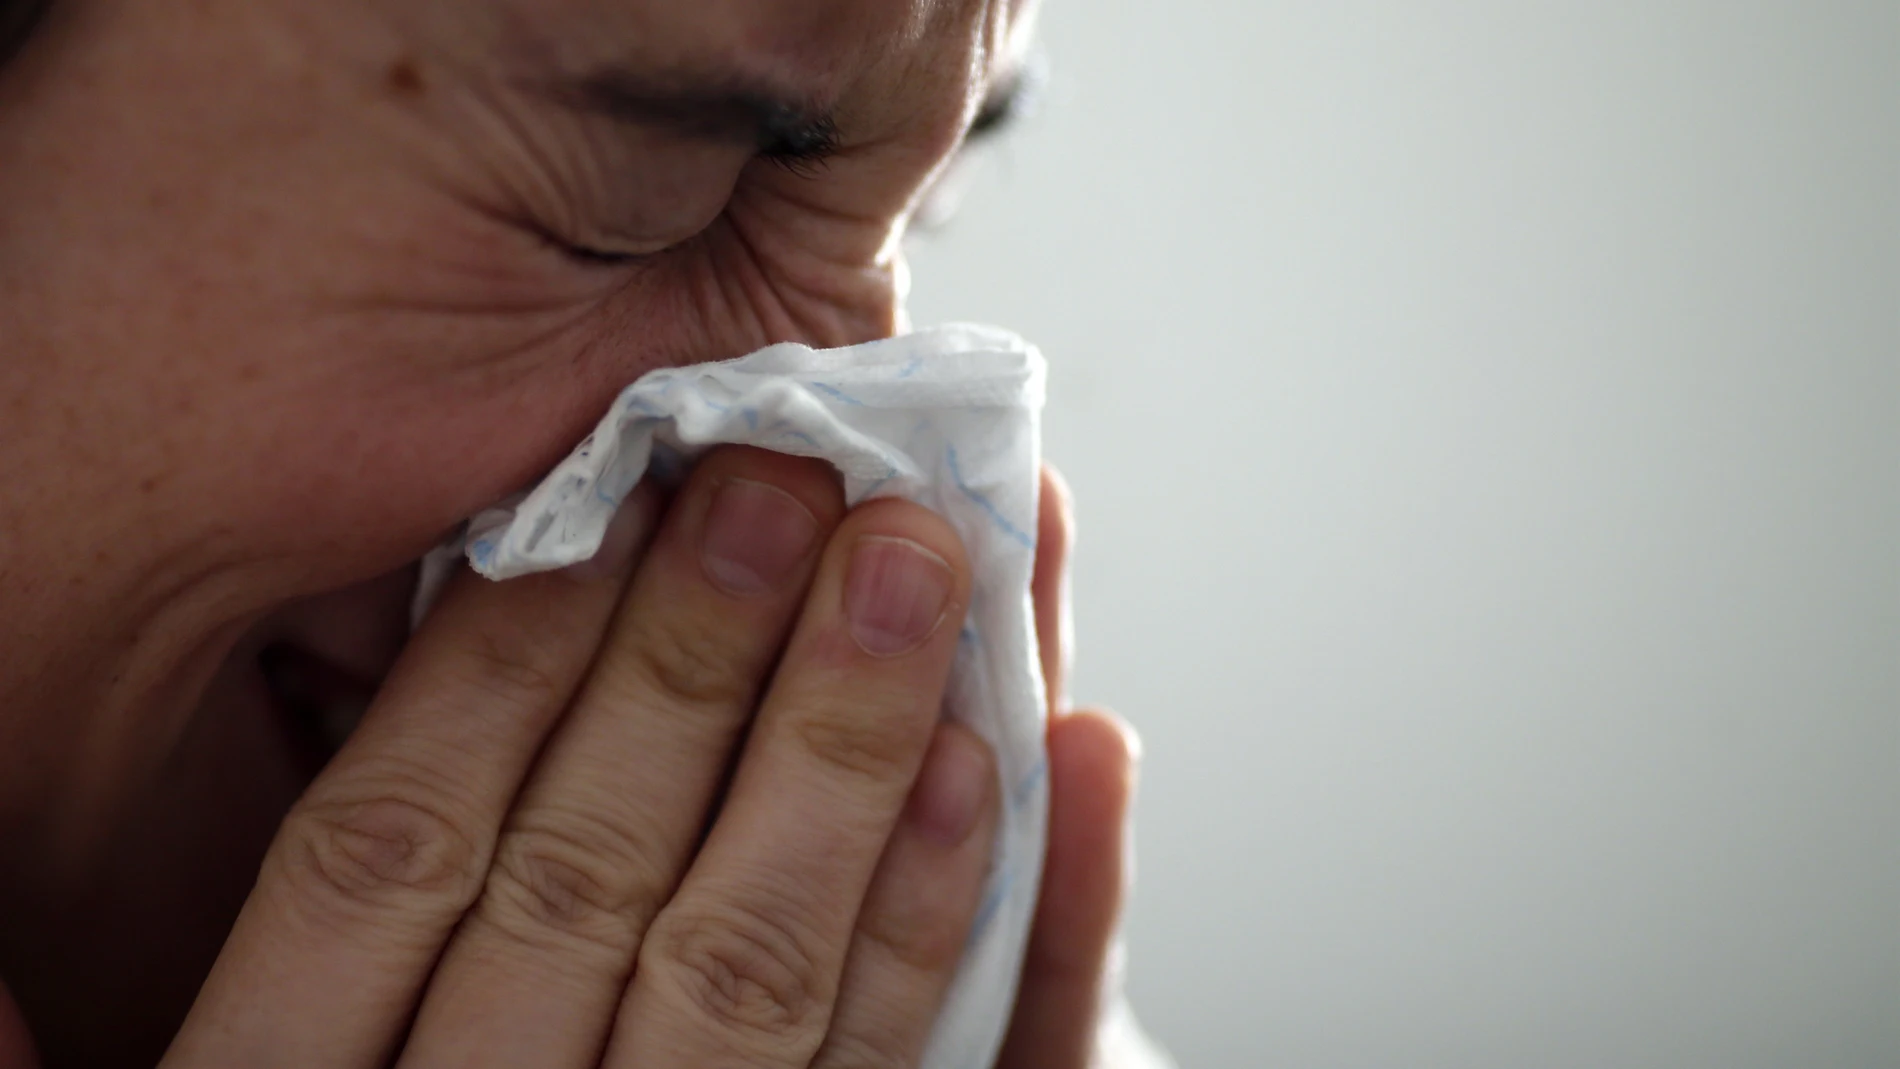 Sanidad notifica un aumento del 37% en la incidencia de enfermedades respiratorias en una semana, sobre todo de gripe